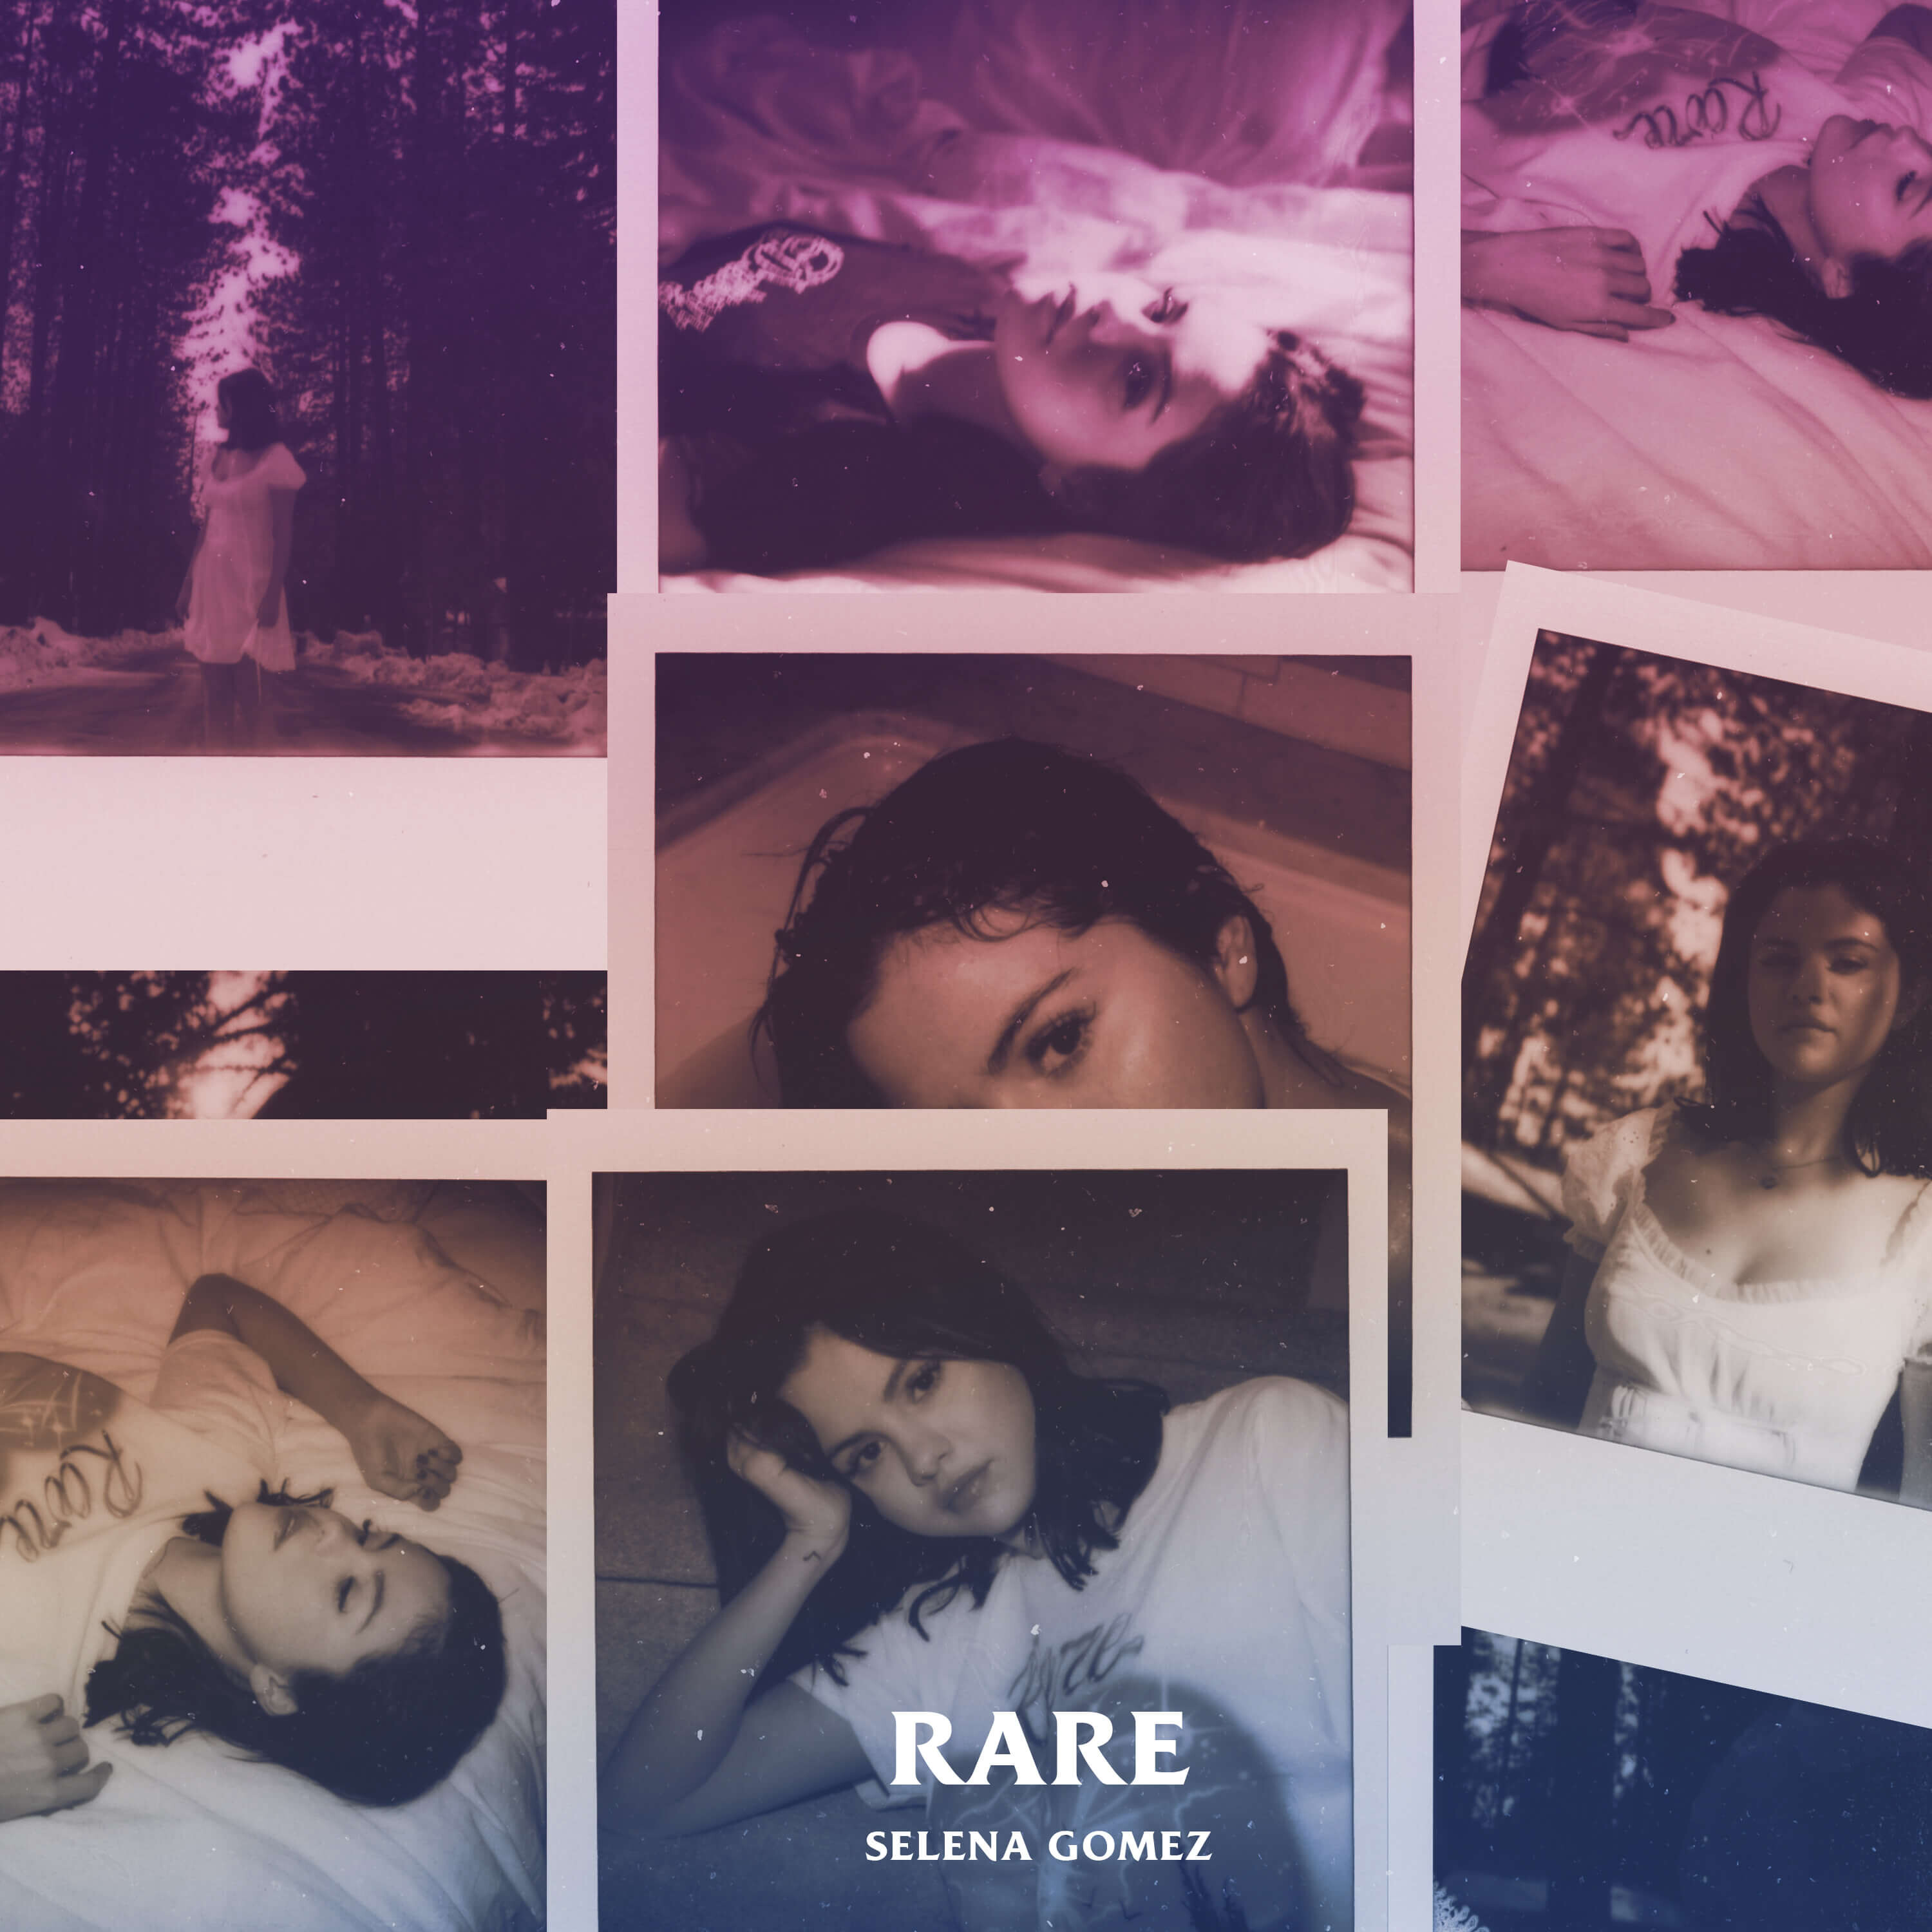 Bravado - Rare (Deluxe CD) - Selena Gomez - Deluxe CD